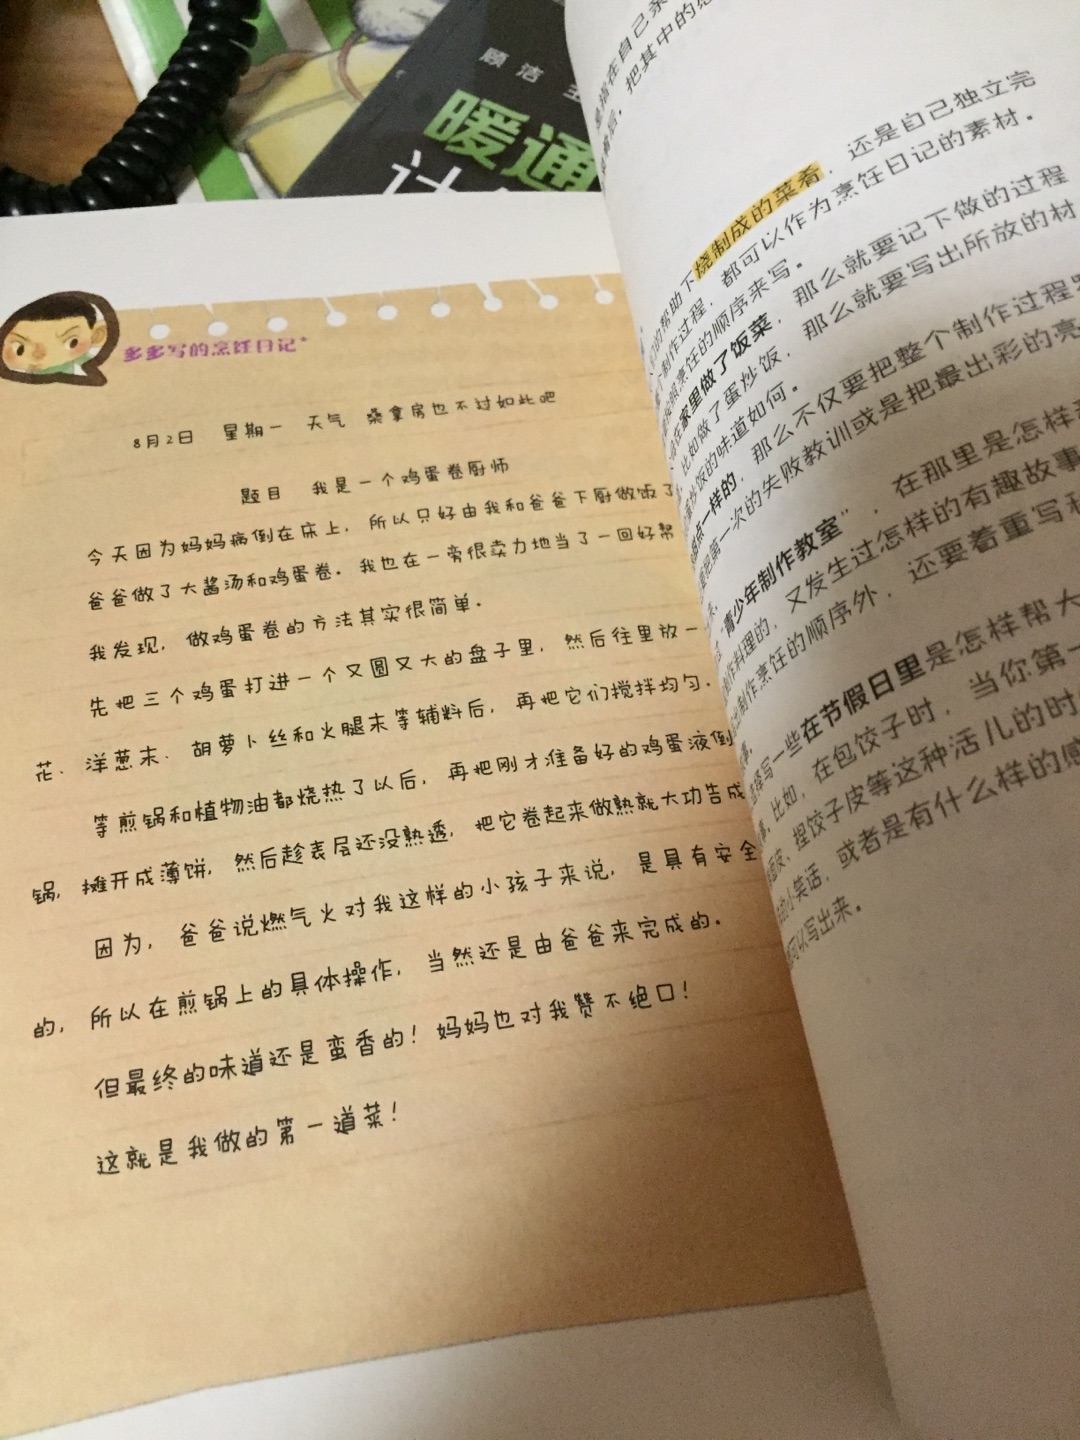 韩国人搞的，印刷花哨，比较吸引孩子眼球，有各种日记的范本，对于启蒙来说还是挺管用的，适合没写过日记的孩子，总的来说还不错